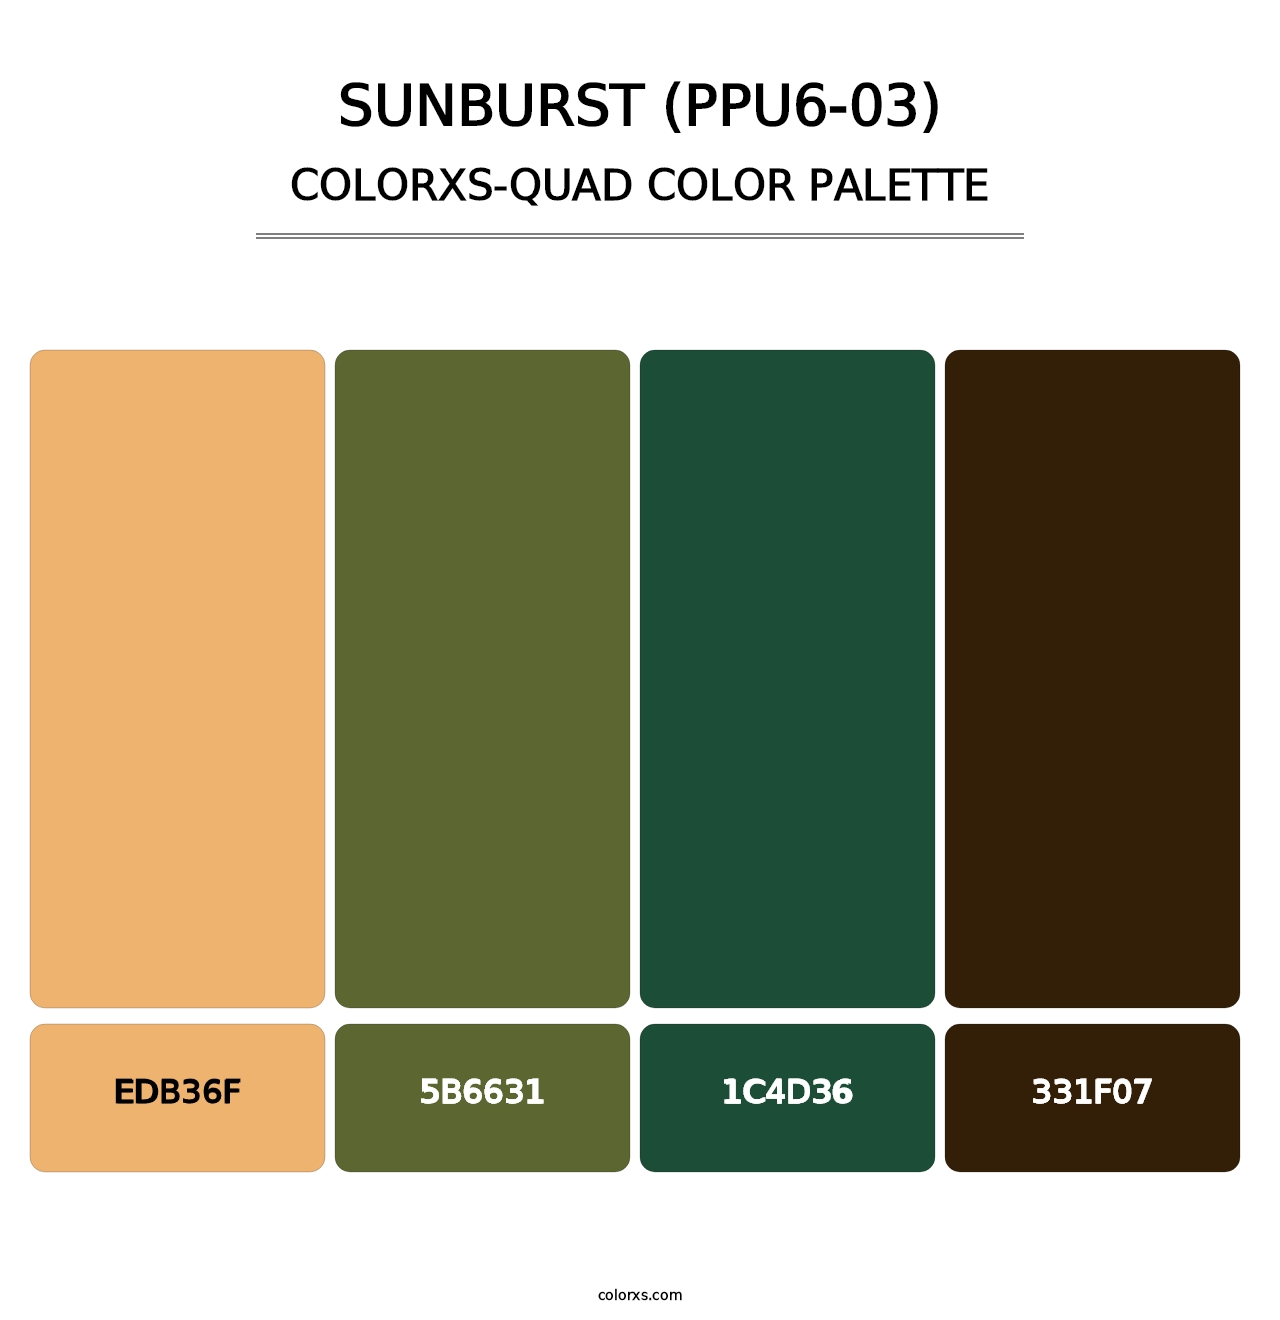 Sunburst (PPU6-03) - Colorxs Quad Palette